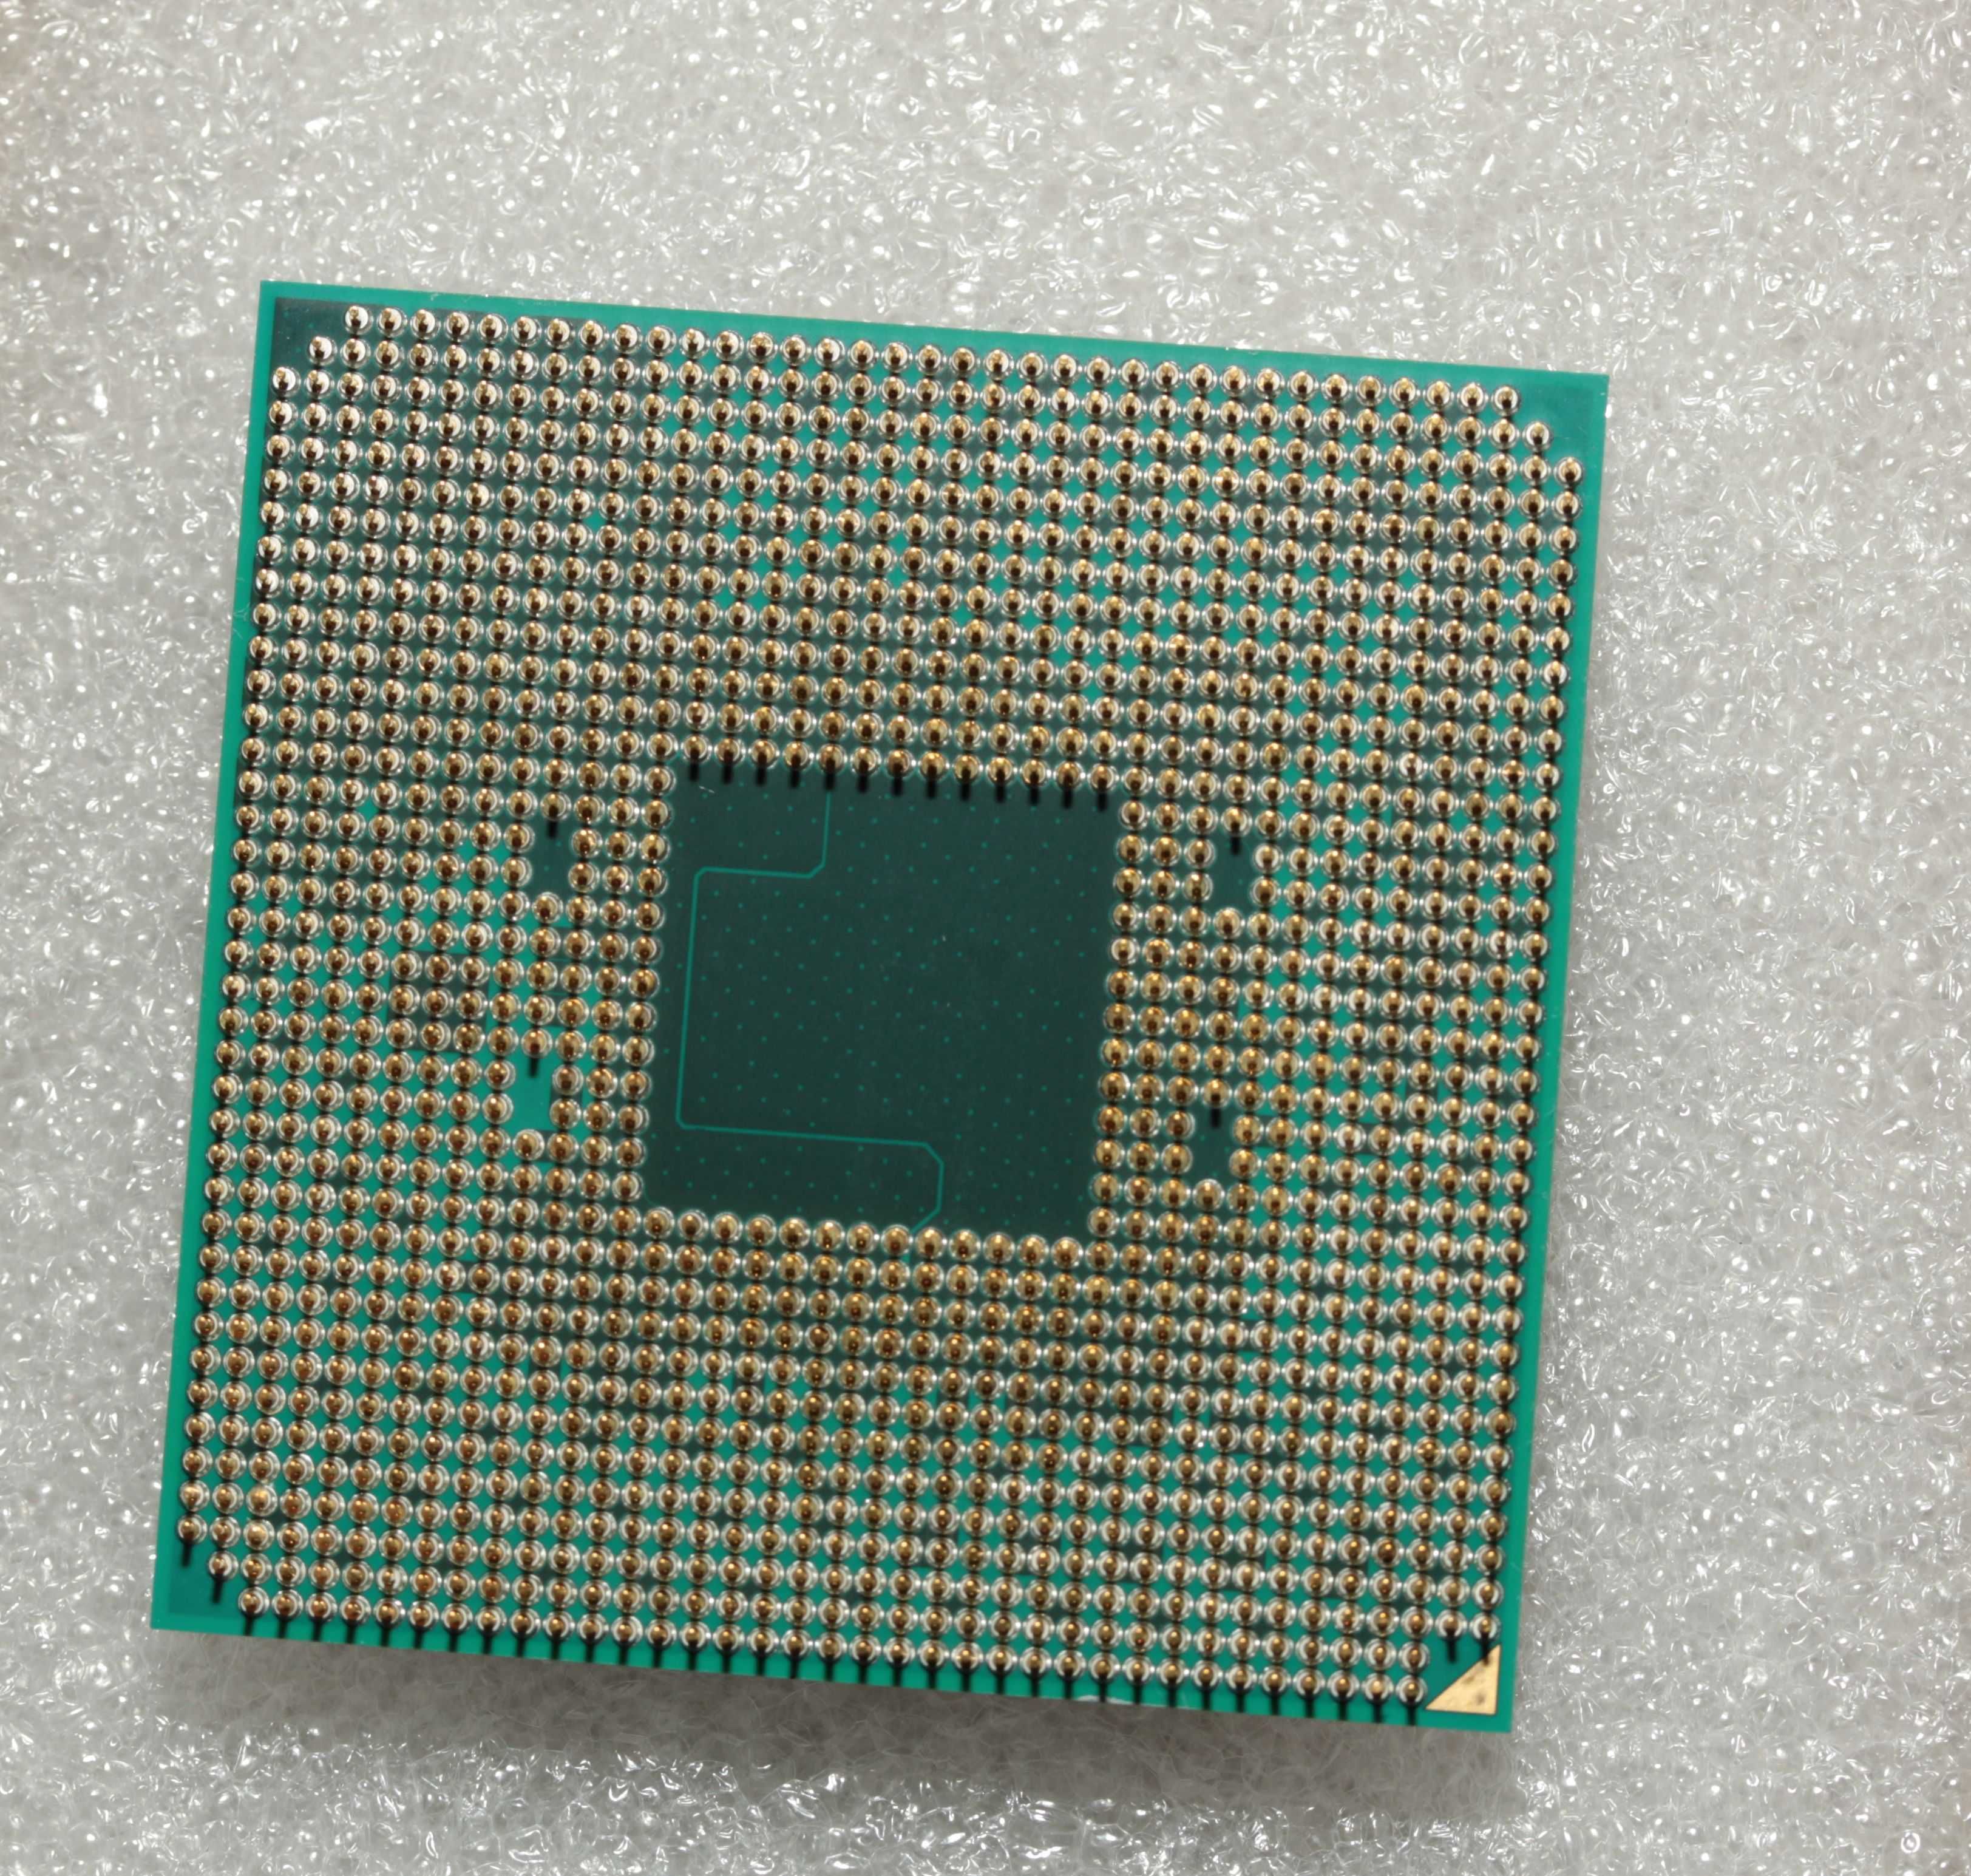 Продам процессор AMD Ryzen 5 3400G